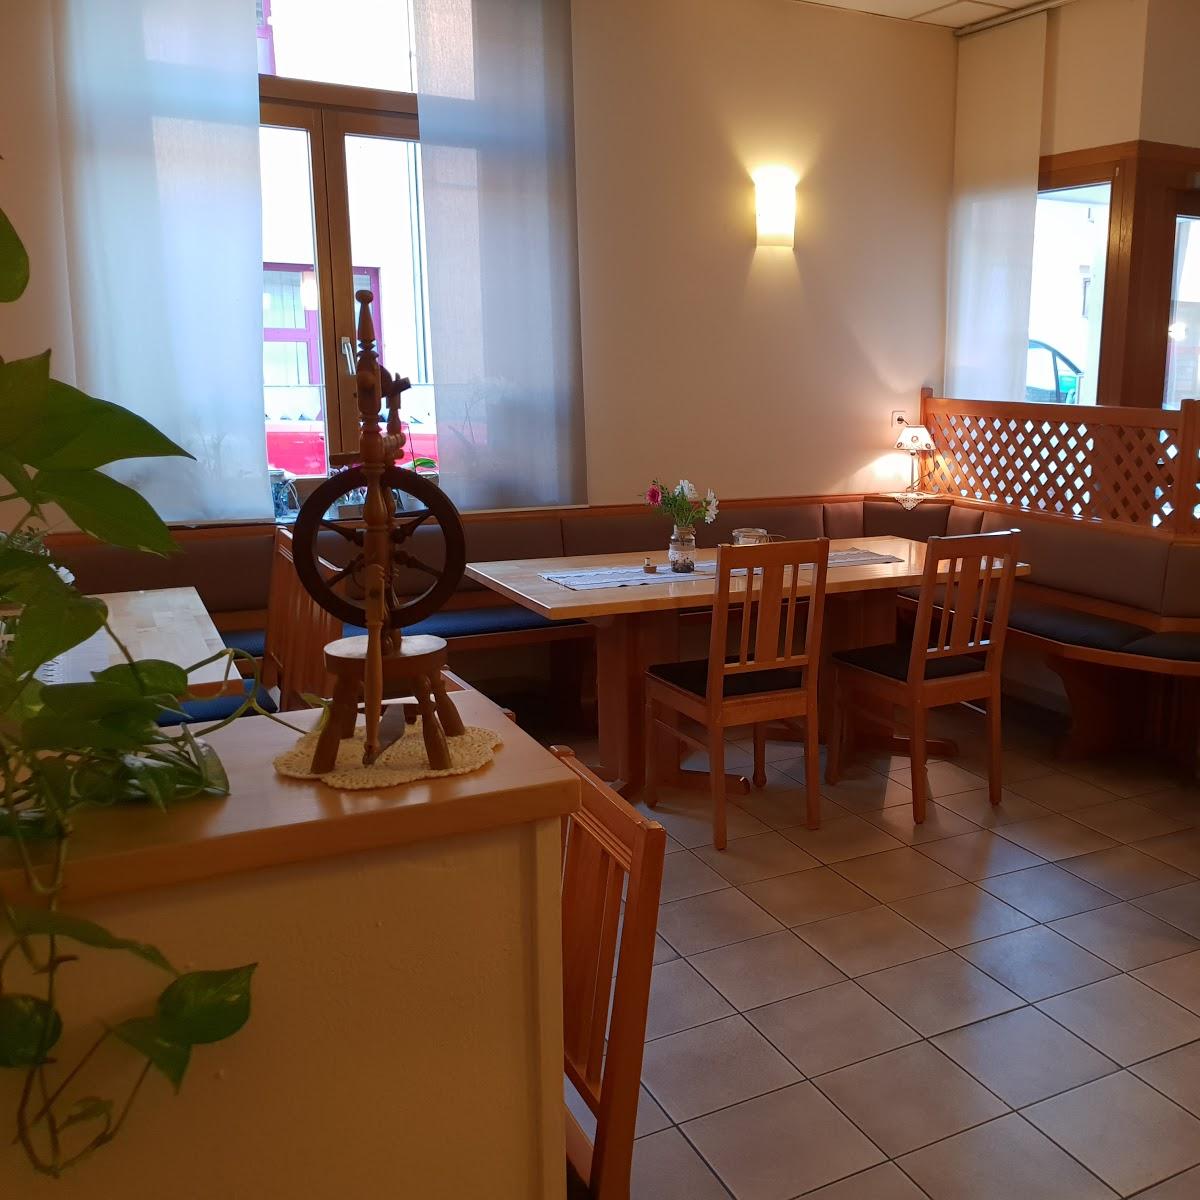 Restaurant "Zum Schäferstübchen" in Sprendlingen